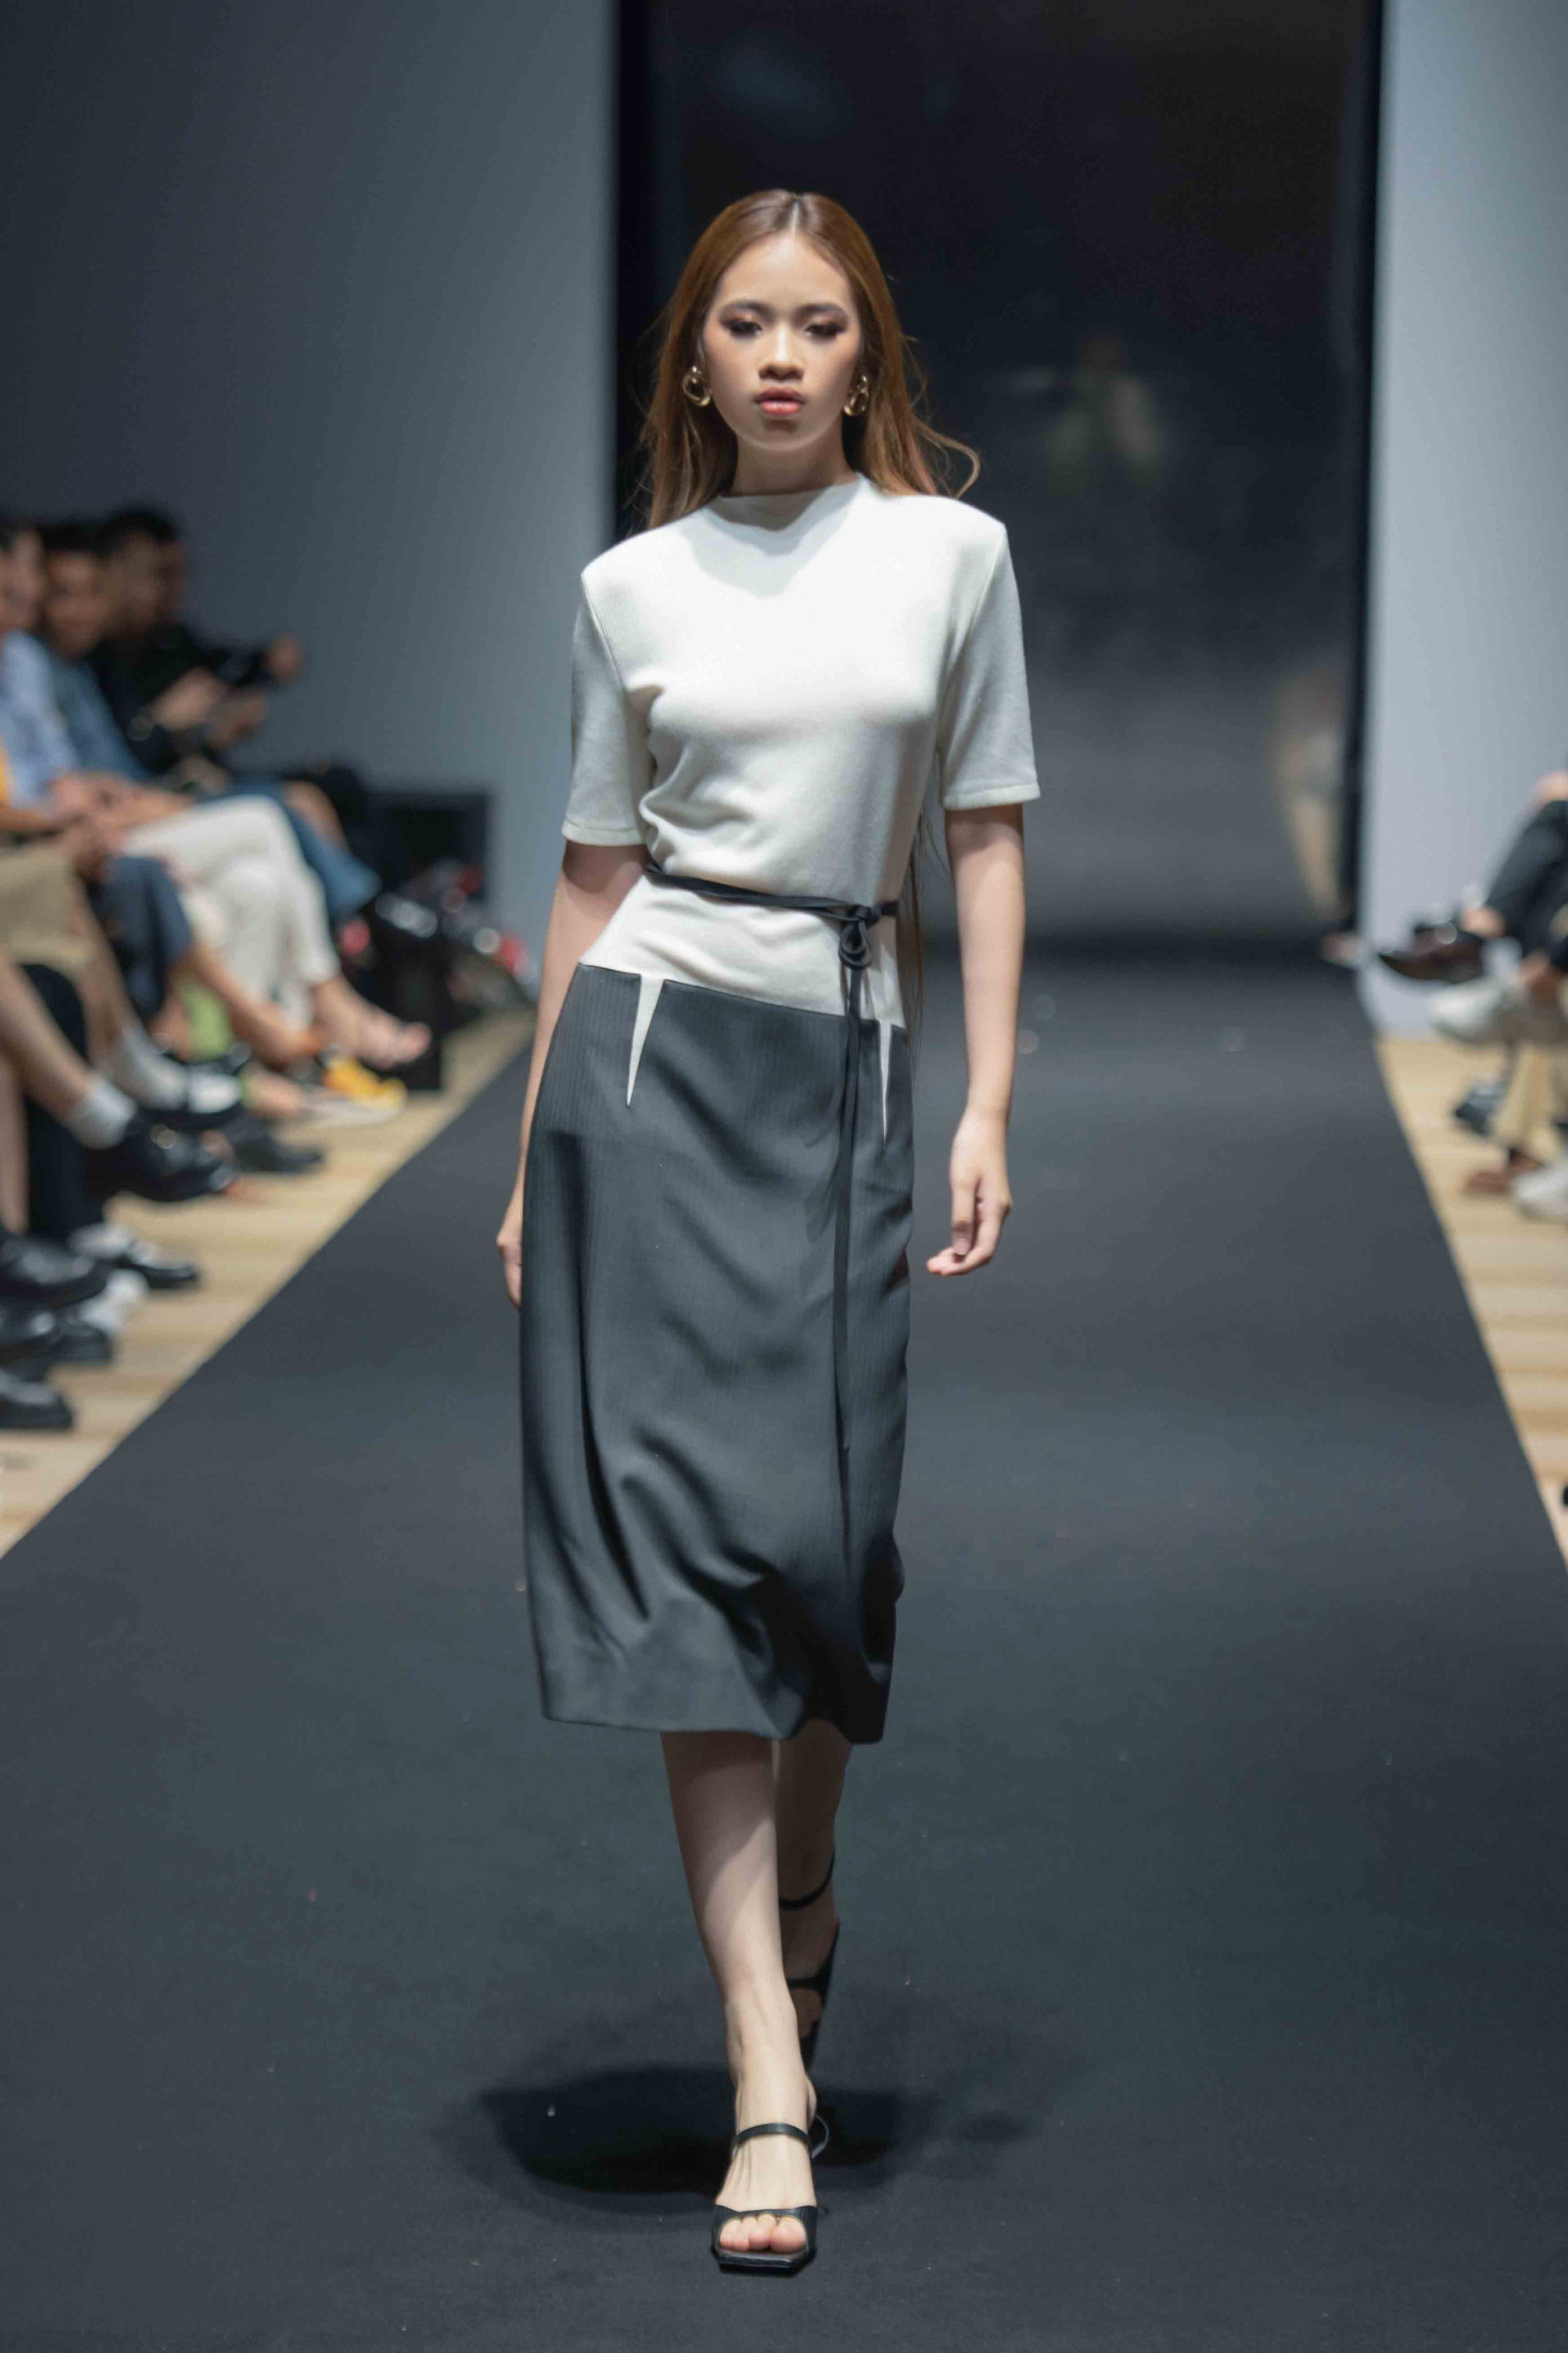 Trình diễn cho thiết kế của thương hiệu Decos, Bảo Hà diện set váy áo nhã nhặn mang hai tone màu trắng và đen lấy thắt lưng mảnh làm điểm nhấn.